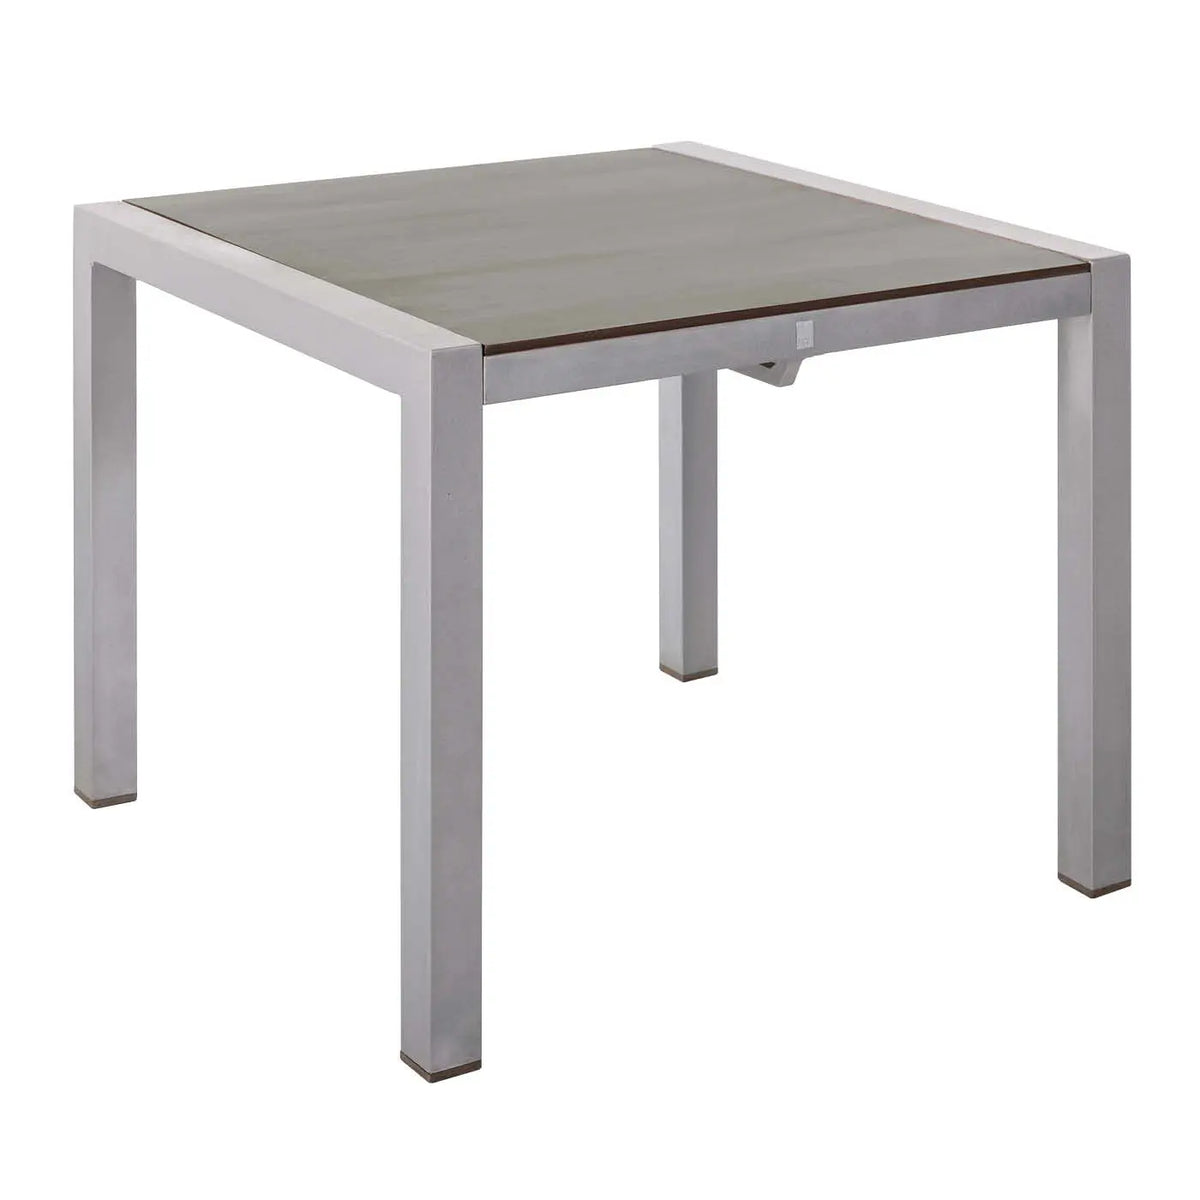 Tisch Kennedy / Tischplatte Stone Grey 90 x 90 - bm raumkonzept